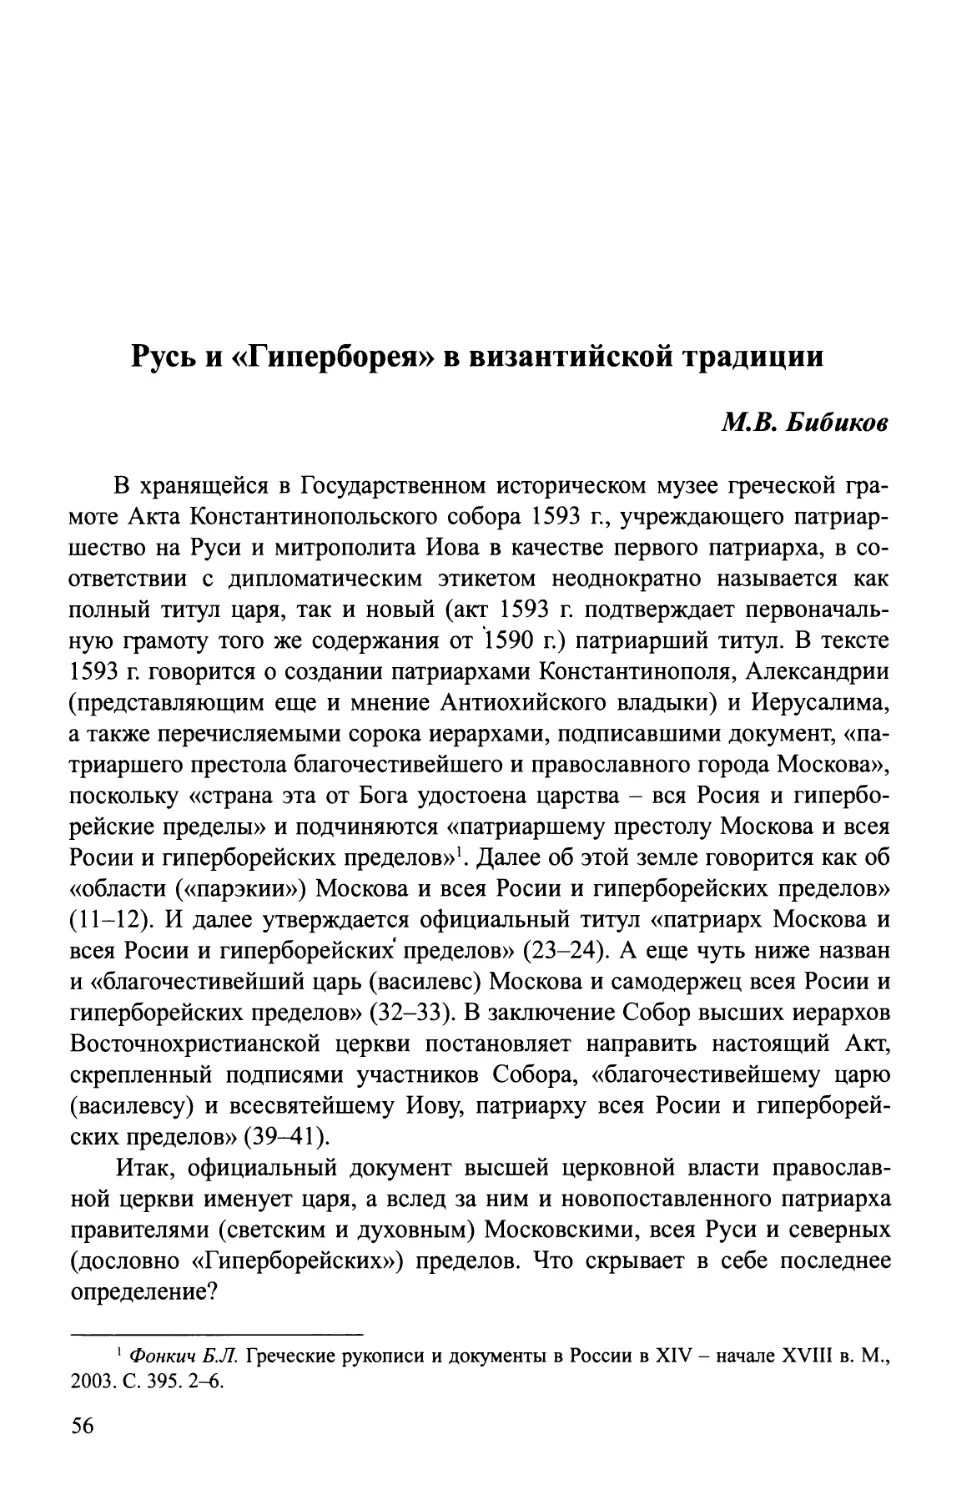 Бибиков М.В. Русь и «Гиперборея» в византийской традиции